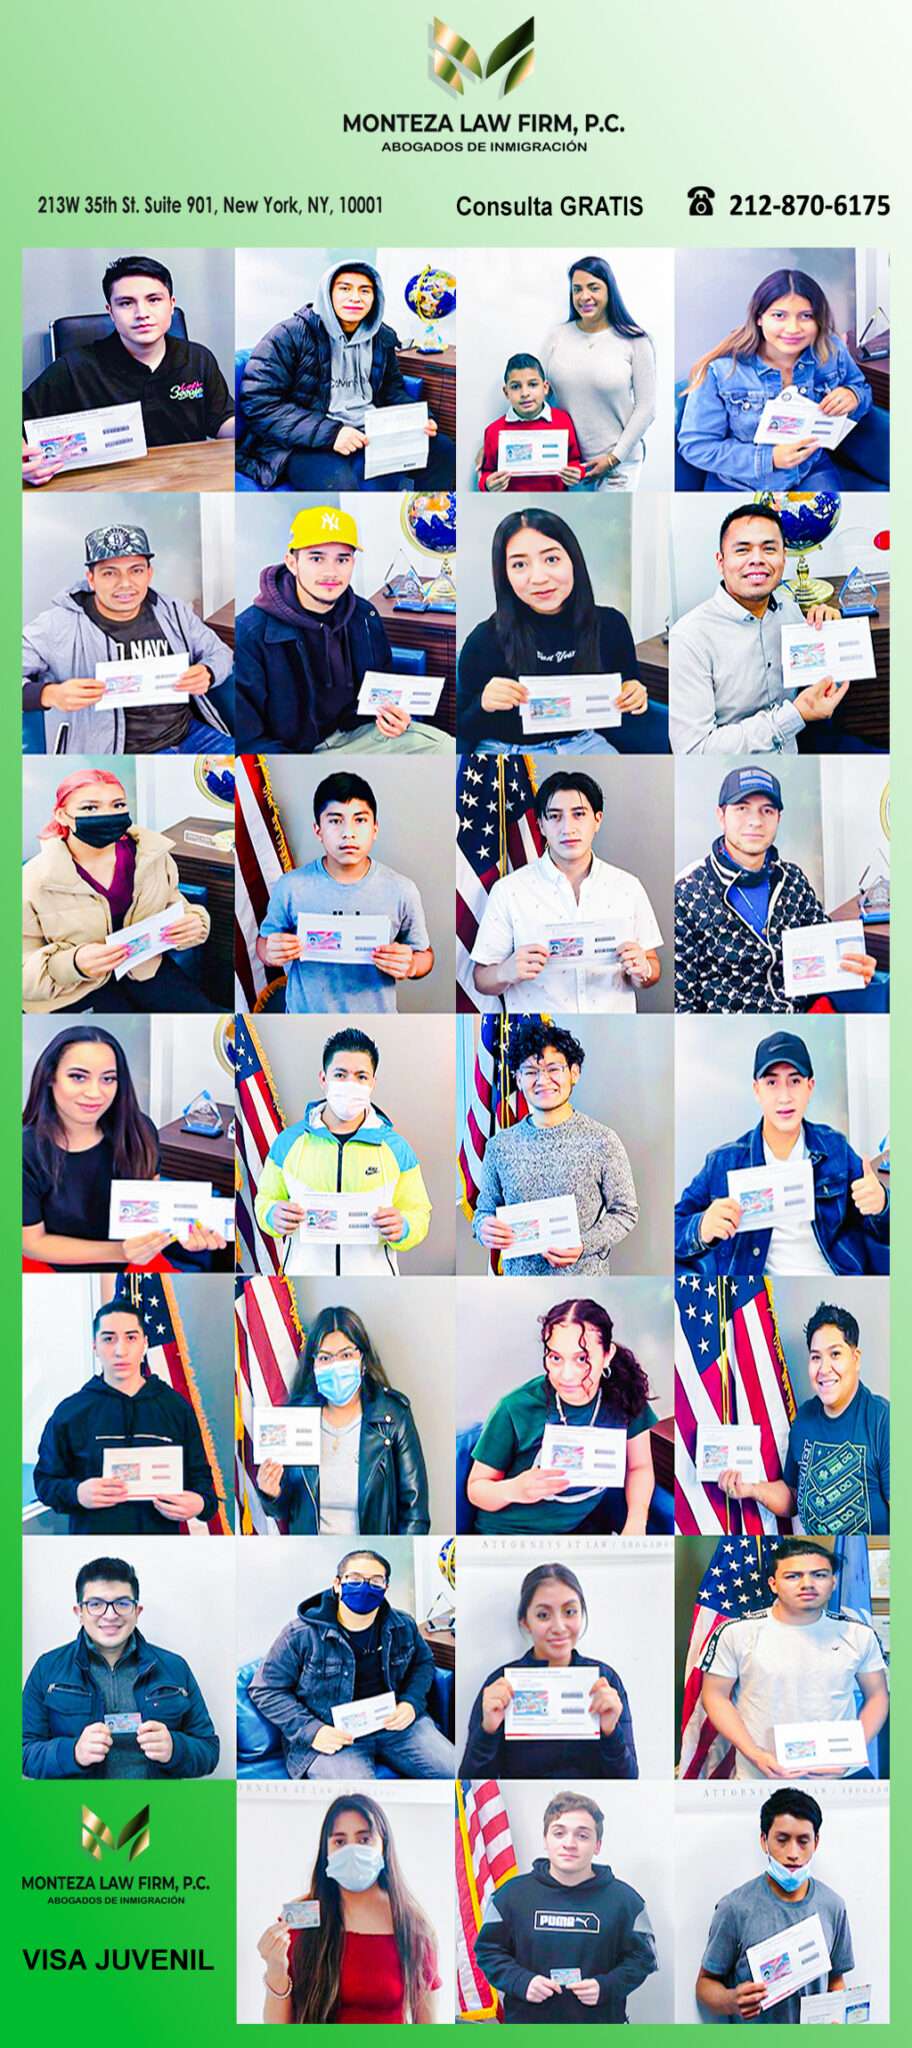 alt="Clientes jovenes latinos hispanos con sus residencia permanente Green Card, ejemplos de casos de migracion y visas juveniles ganados por los expertos abogados migrantes de NY, NJ, CT"